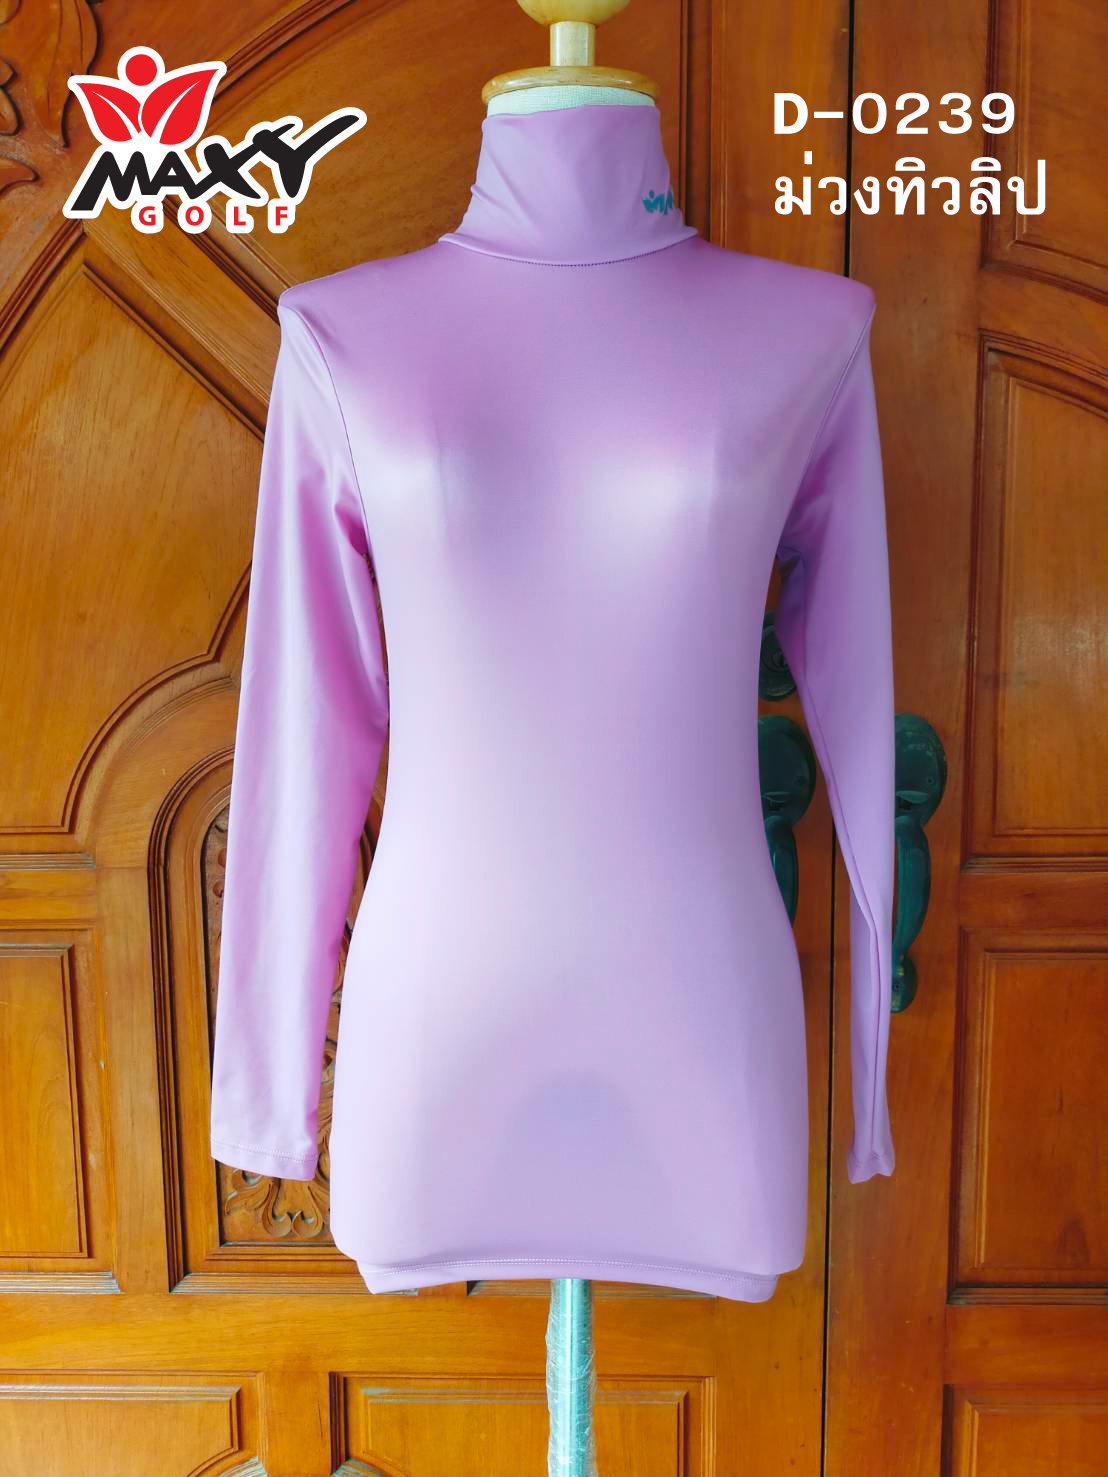 เสื้อบอดี้ฟิตกันแดด(คอเต่า) สีพื้น สำหรับผู้หญิง ยี่ห้อ MAXY GOLF (รหัส P-0239 สีม่วงทิวลิป)